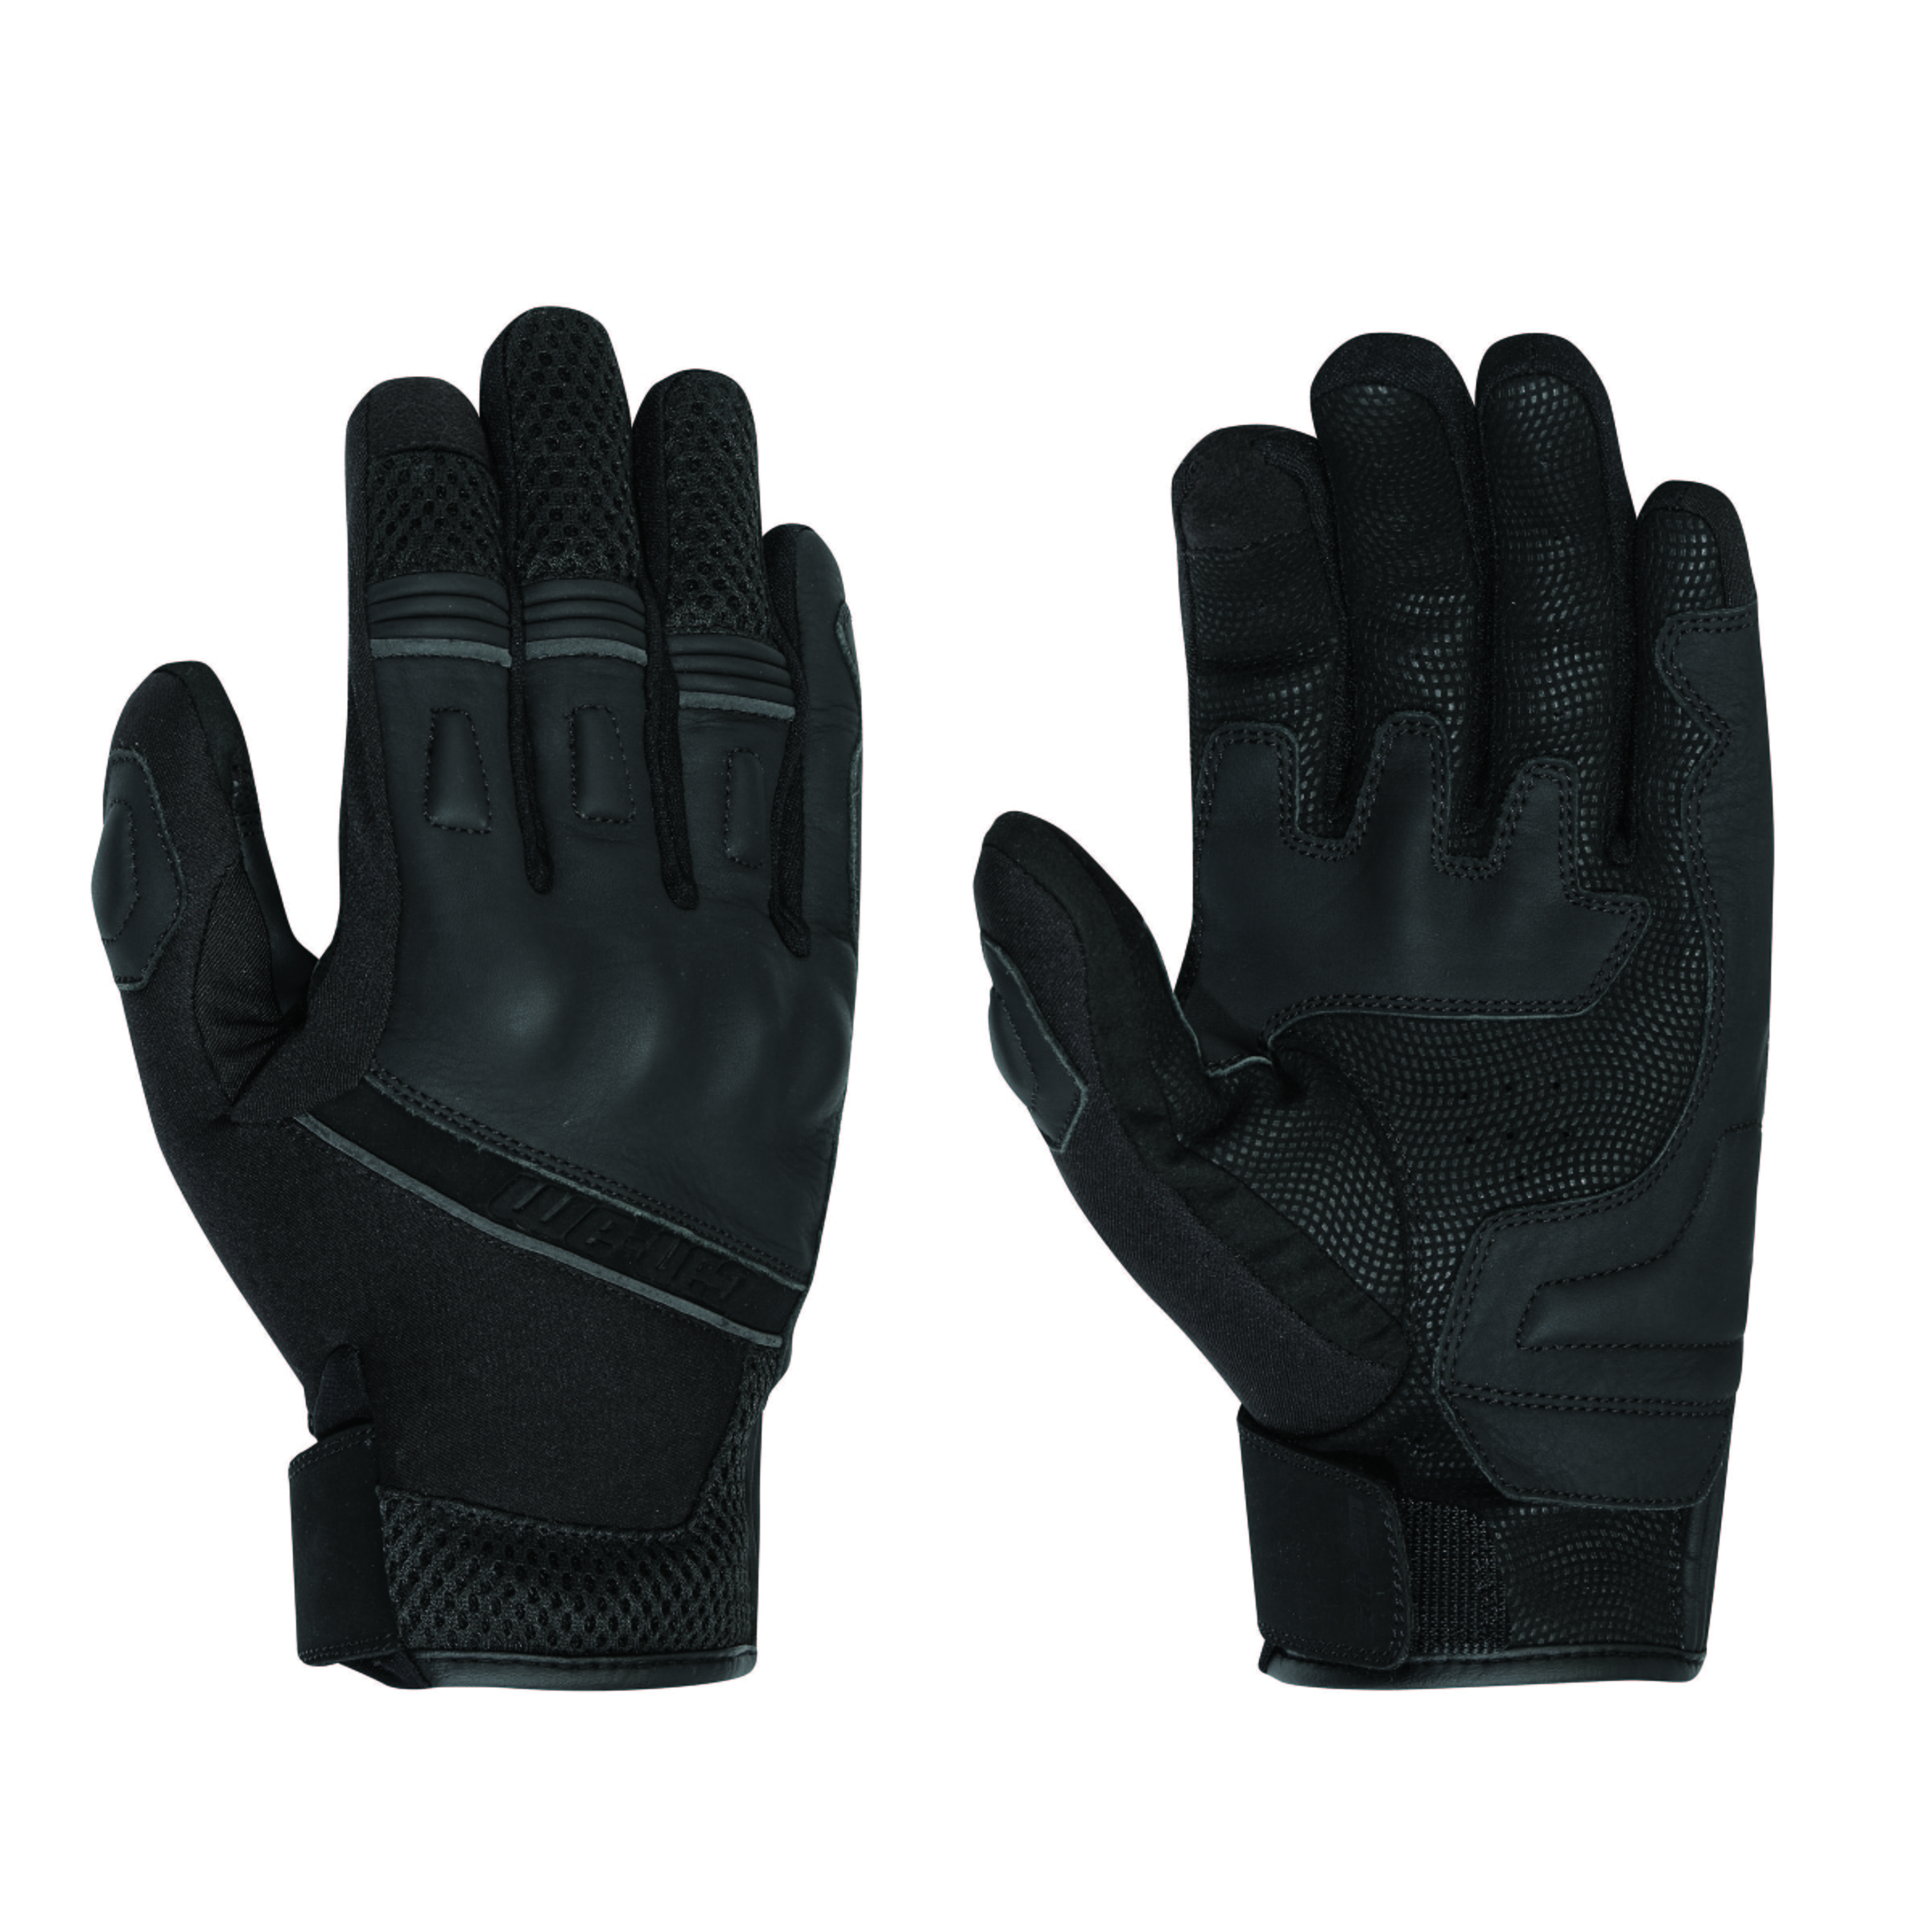 Rangers Gloves